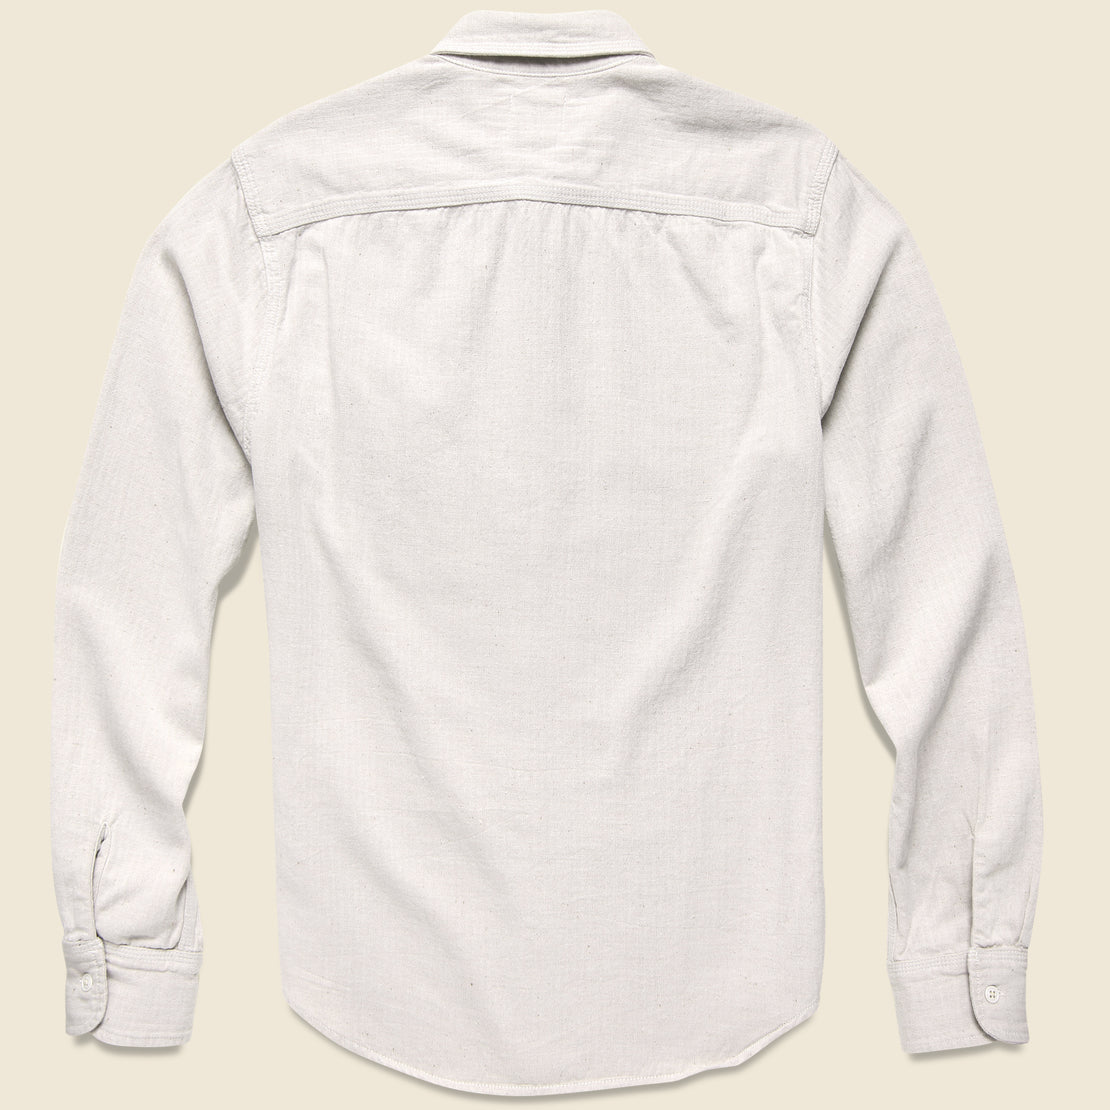 Herringbone Overshirt - White